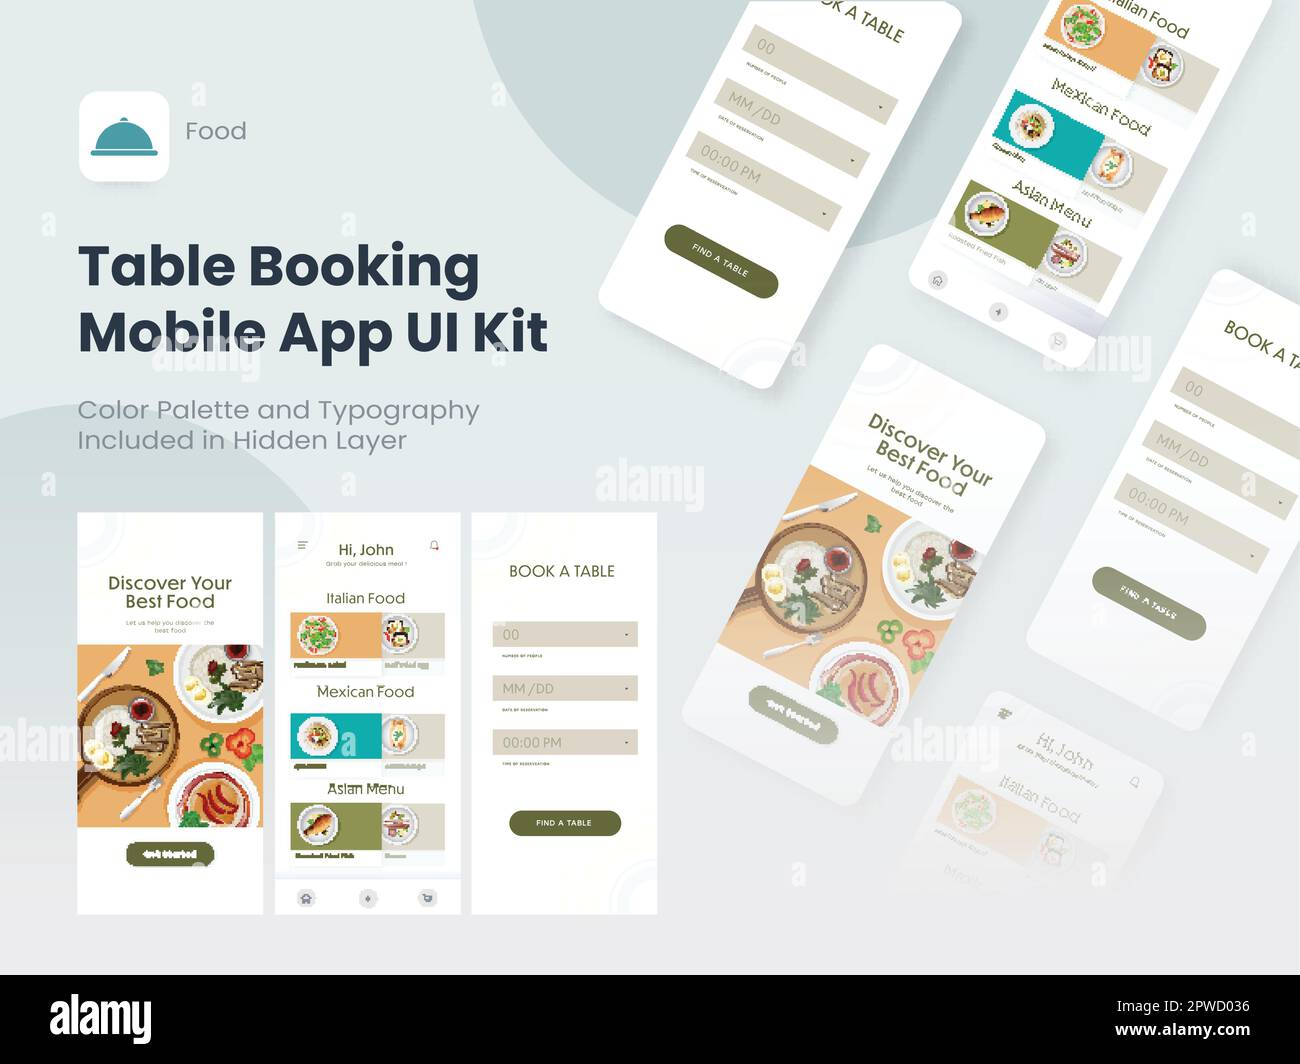 Tischbuchung Mobile App UI-Kit einschließlich Anmeldung, Speisemenü, Reservierungsbildschirm für Restaurant oder Hotel. Stock Vektor